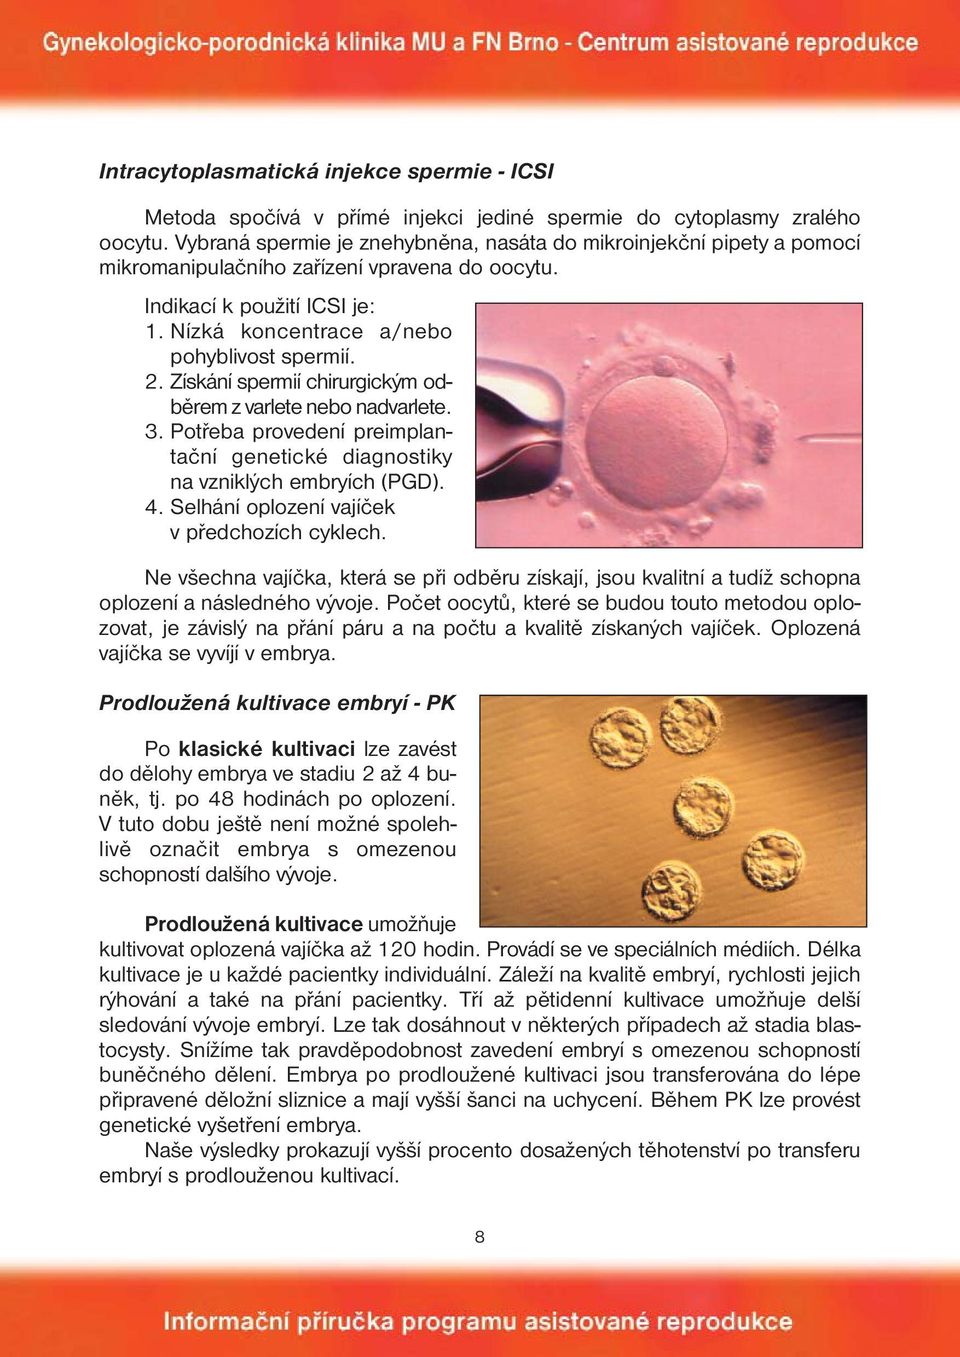 Získání spermií chirurgickým odběrem z varlete nebo nadvarlete. 3. Potřeba provedení preimplantační genetické diagnostiky na vzniklých embryích (PGD). 4.